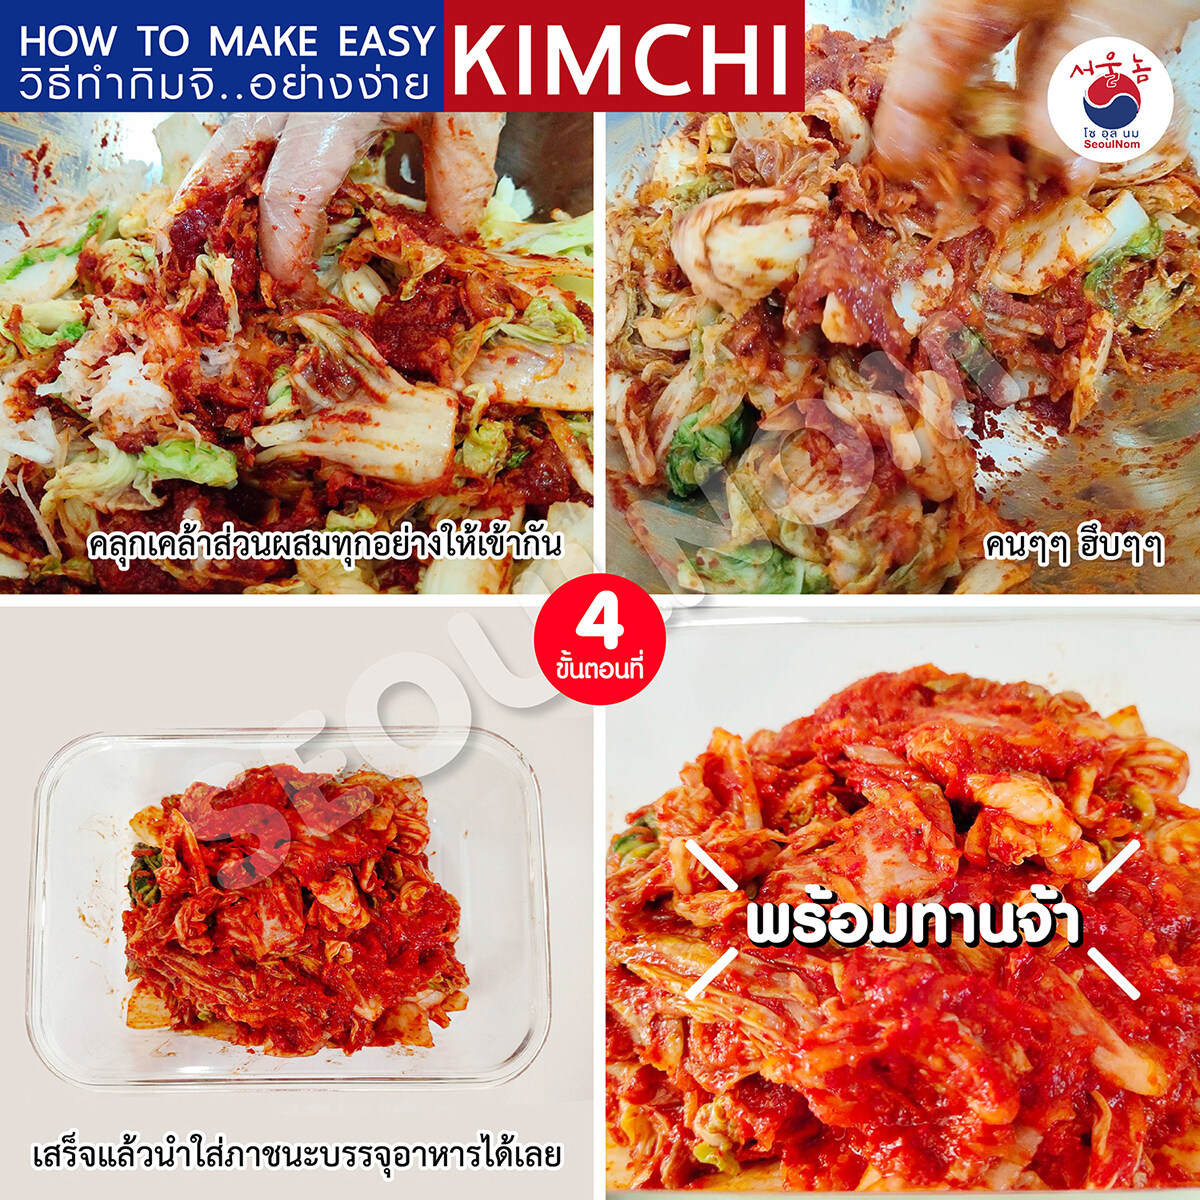 ซอสกิมจิ สำเร็จรูป กิมจิซอส ซอสทำกิมจิ ซอสหมักกิมจิ ทำ กิมจิ สูตรเข้มข้น 450g Kimchi Sauce By SeoulNom (โซอุลนม)?? #ซอสเกาหลี ฟรี! คูลเจล